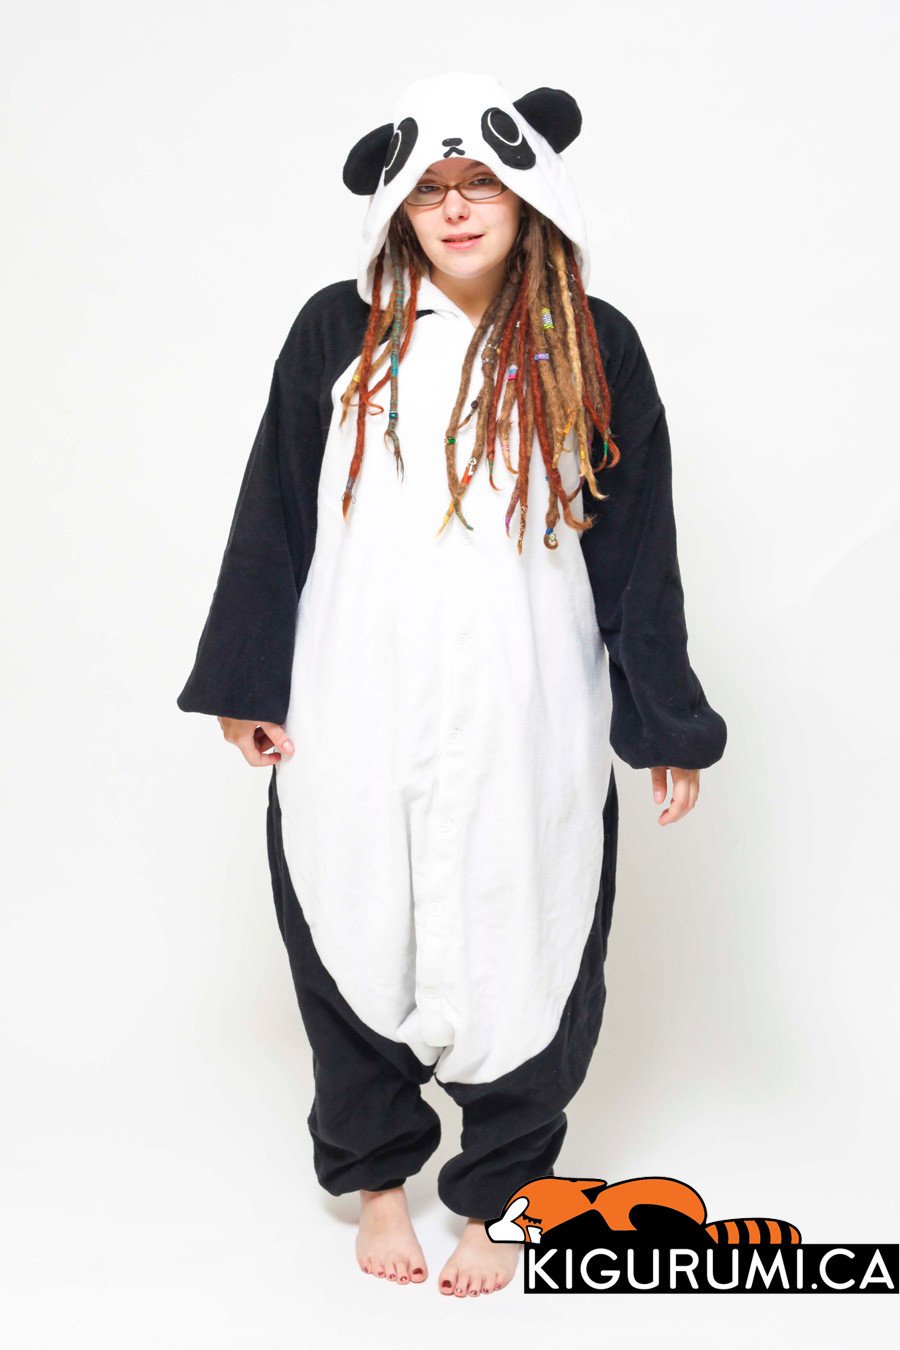 Panda3-Kigurumi-Onesie-Costume-Pyjamas-Main_2048x2048.jpg